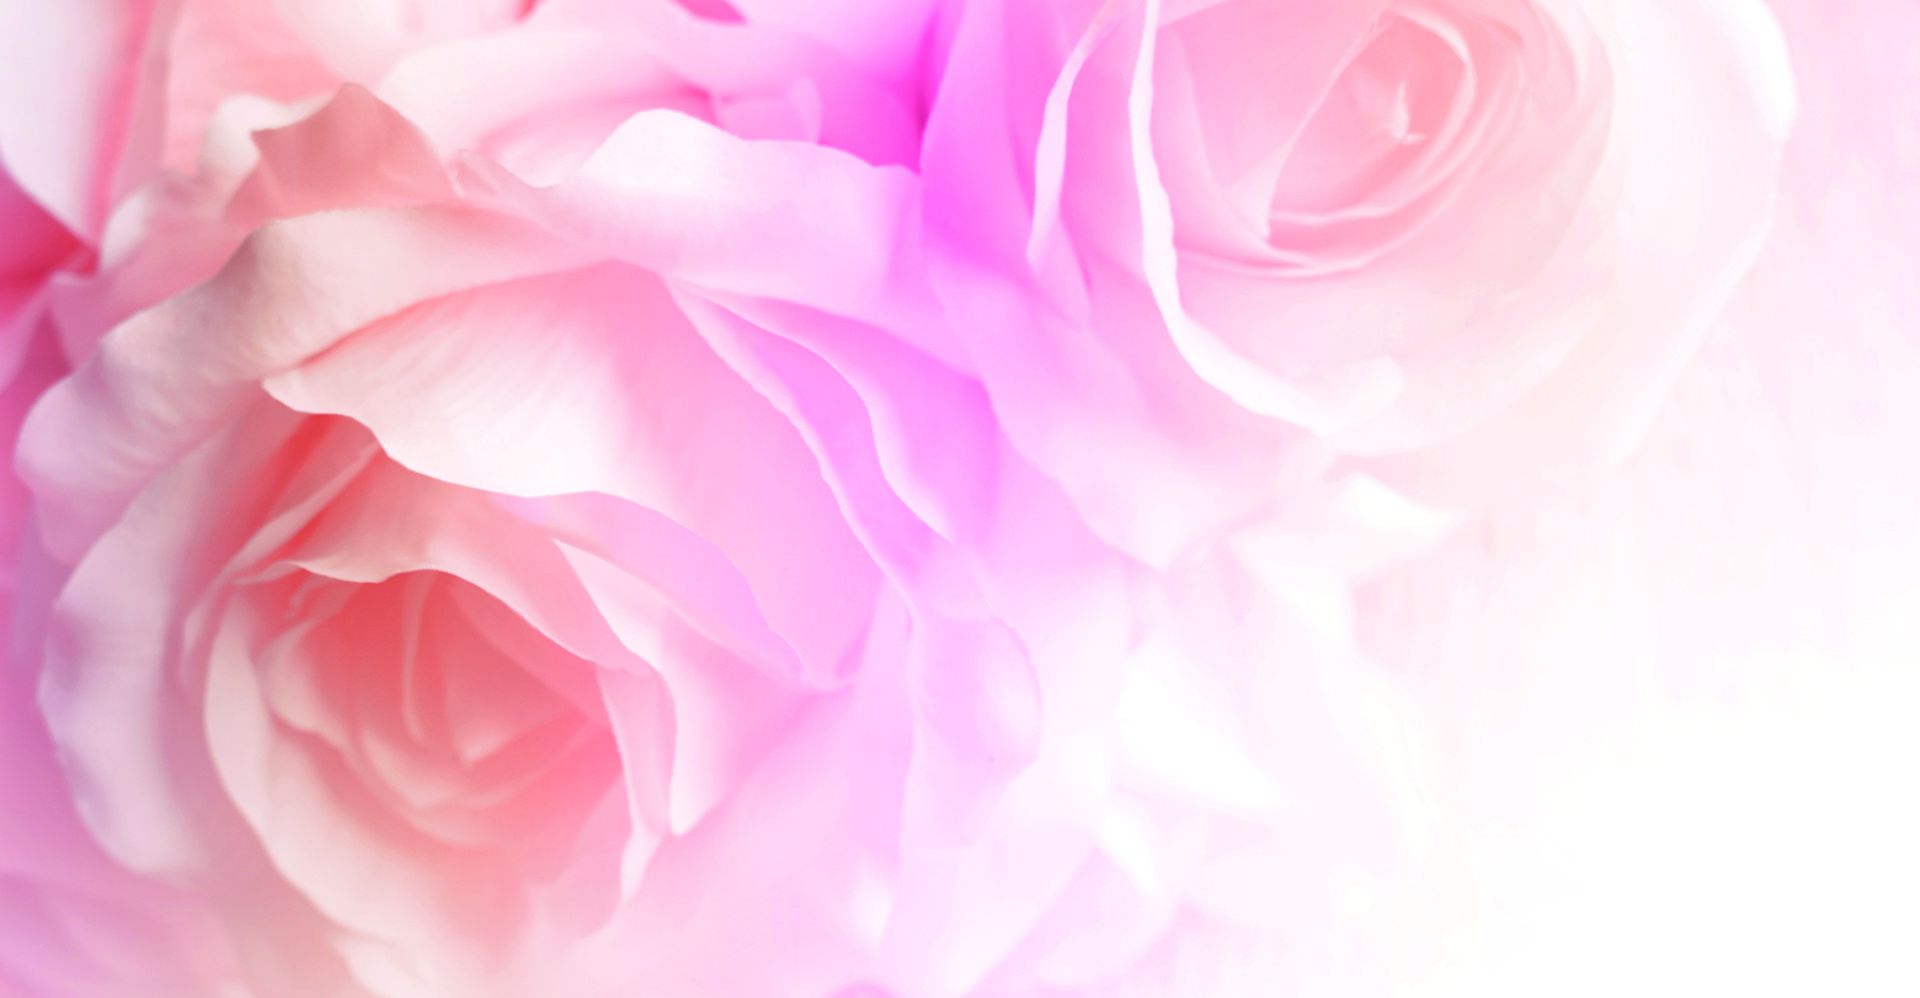 Бледно розовый предложение. Розовые розы фон. Фон бледные розы. Цветы на бледно-розовом фоне. Нежный розовый баннер.